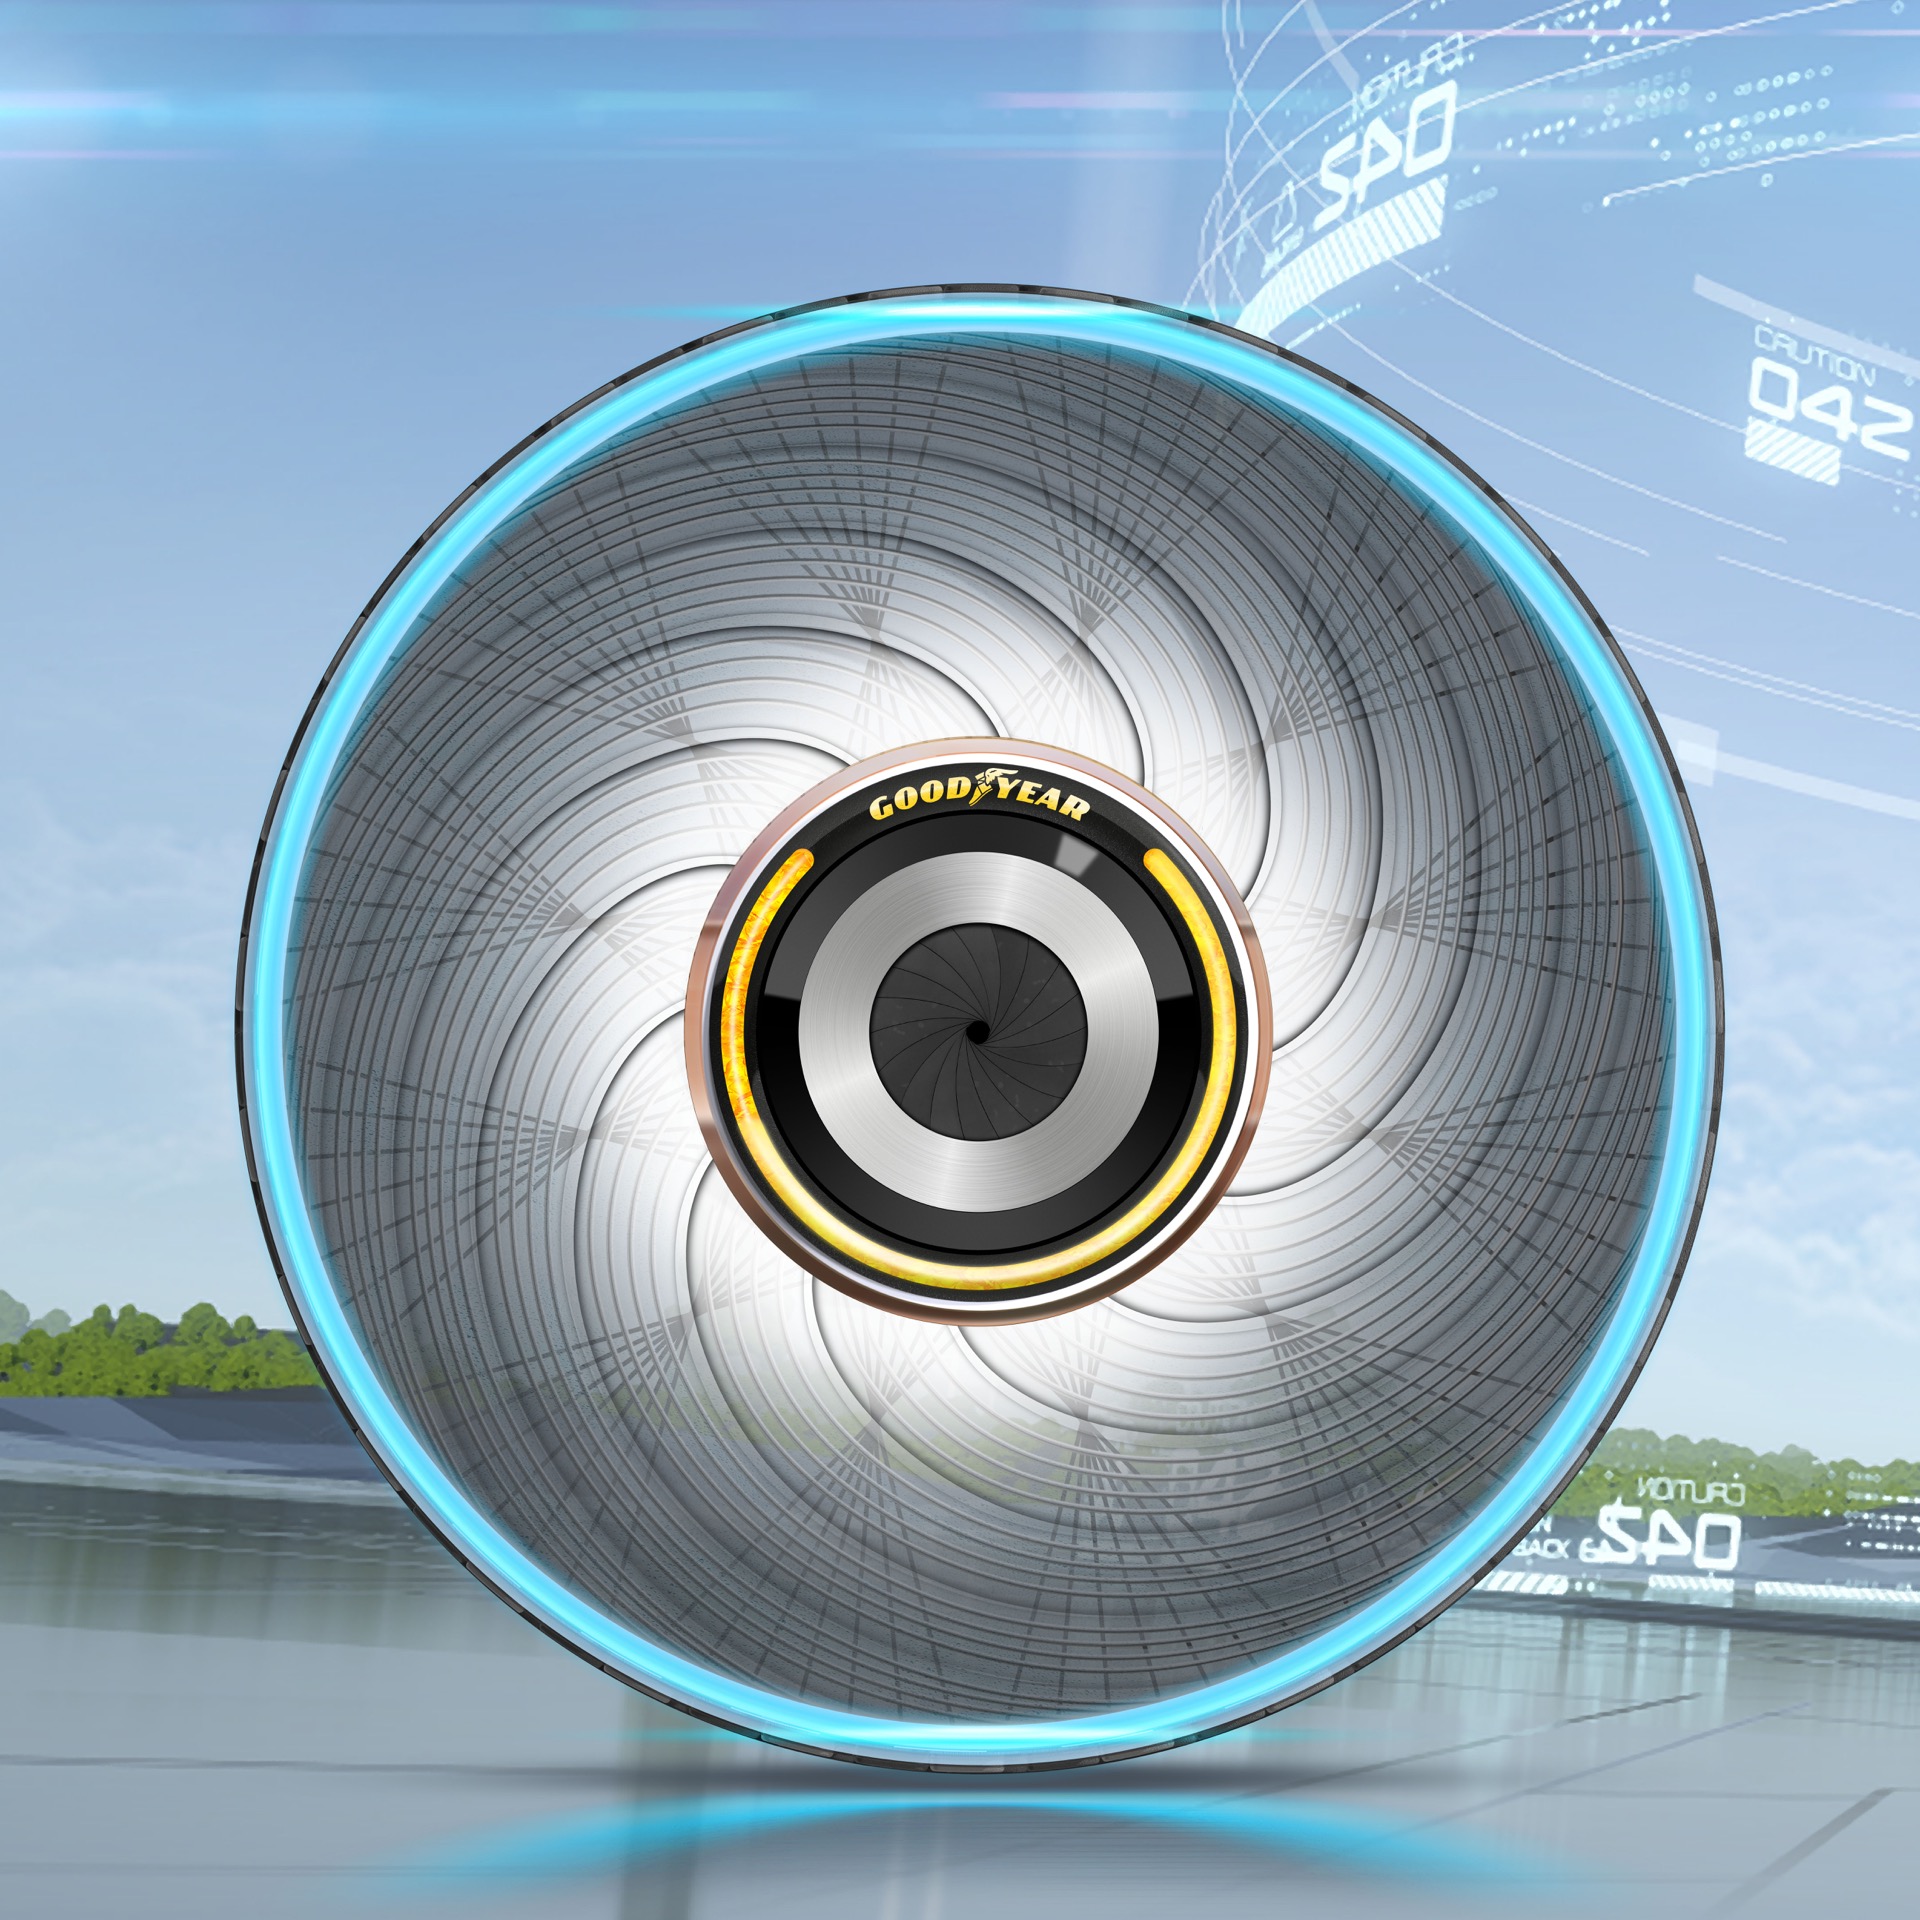 Goodyear dévoile son dernier concept de pneu d'auto-régénération révolutionnaire, équipé de capsules personnalisées. © Goodyear